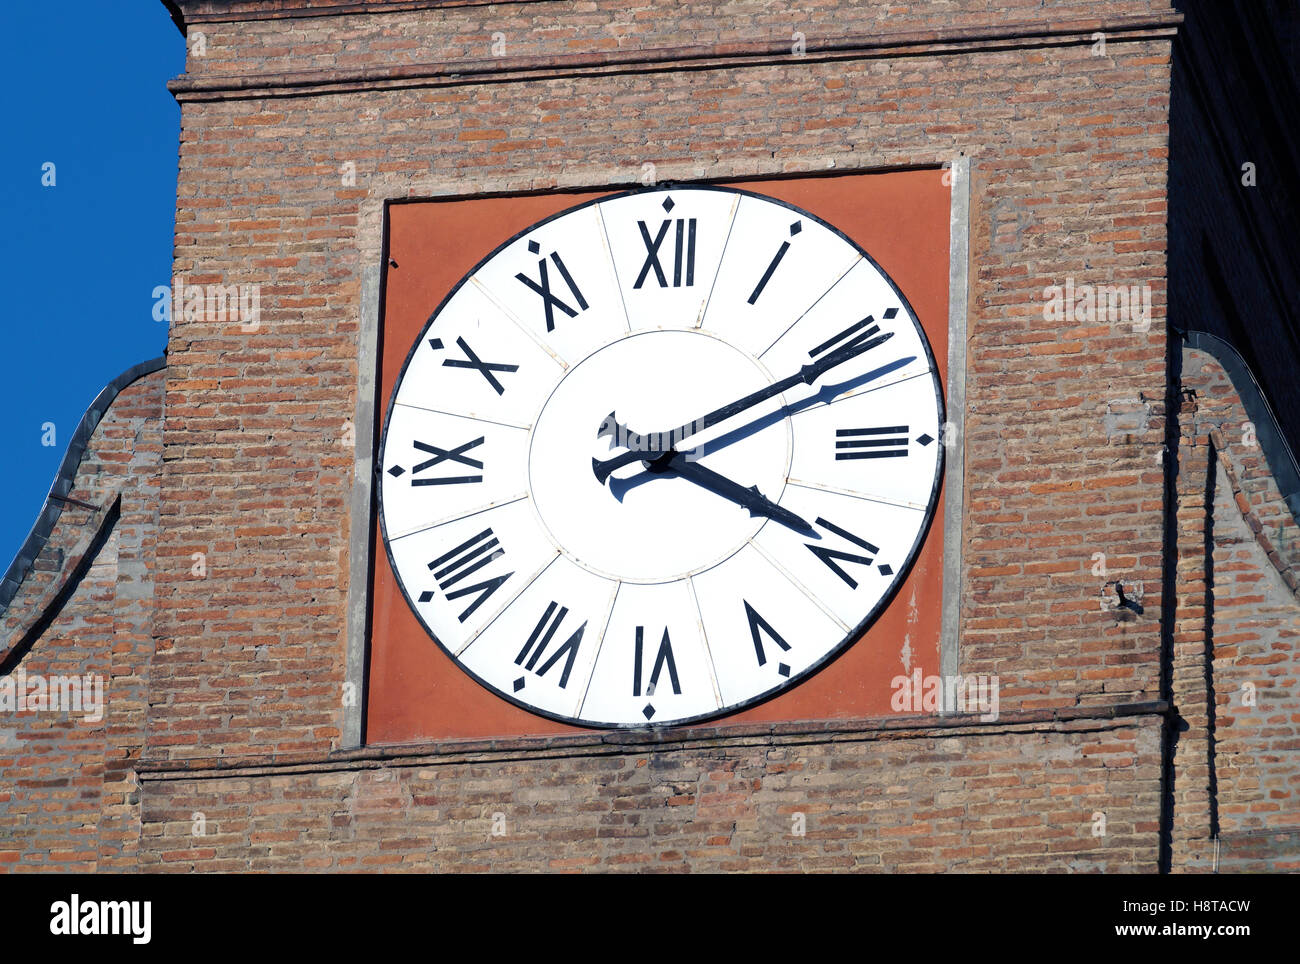 Clock Tower in un villaggio italiano di architettura romana con mattoni rossi Foto Stock